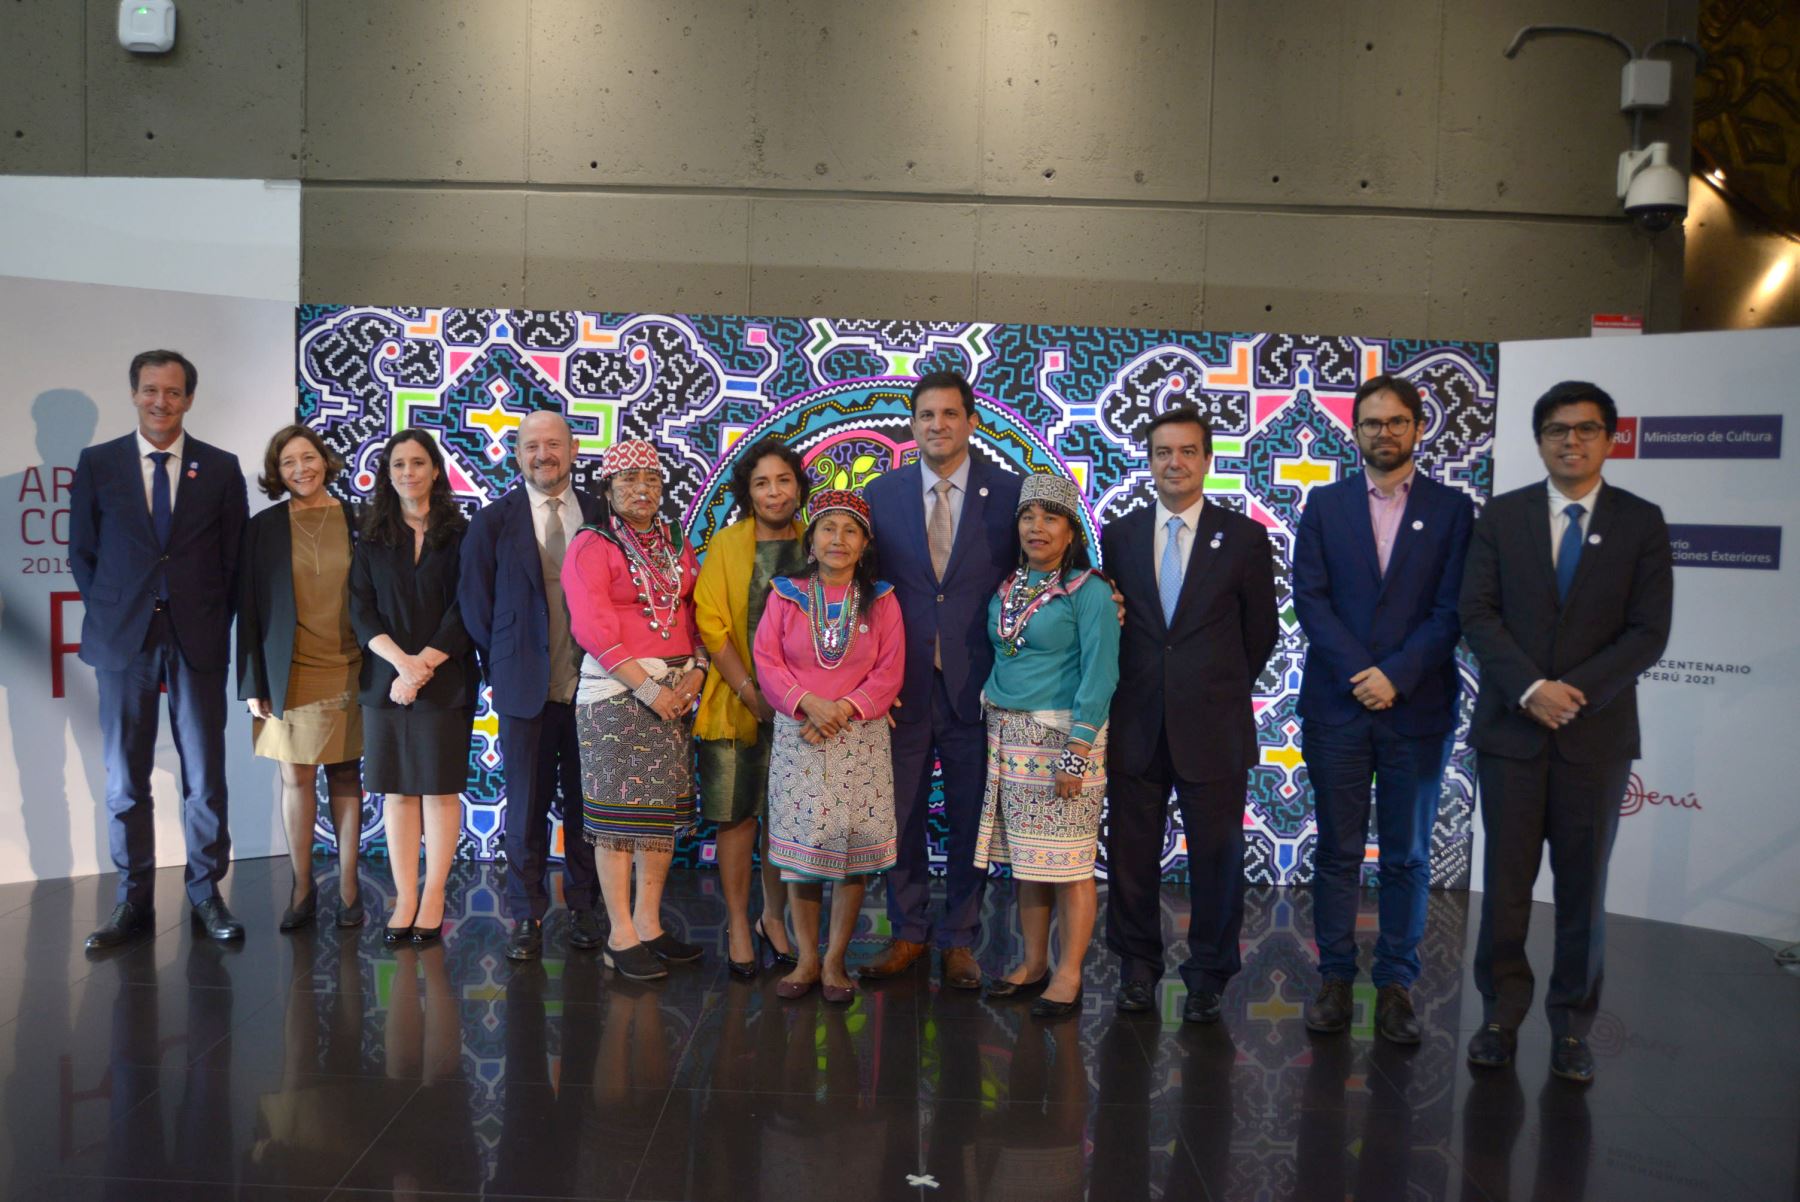 Perú presenta participación en feria ARCOmadrid 2019 Foto: Ministerio de Cultura